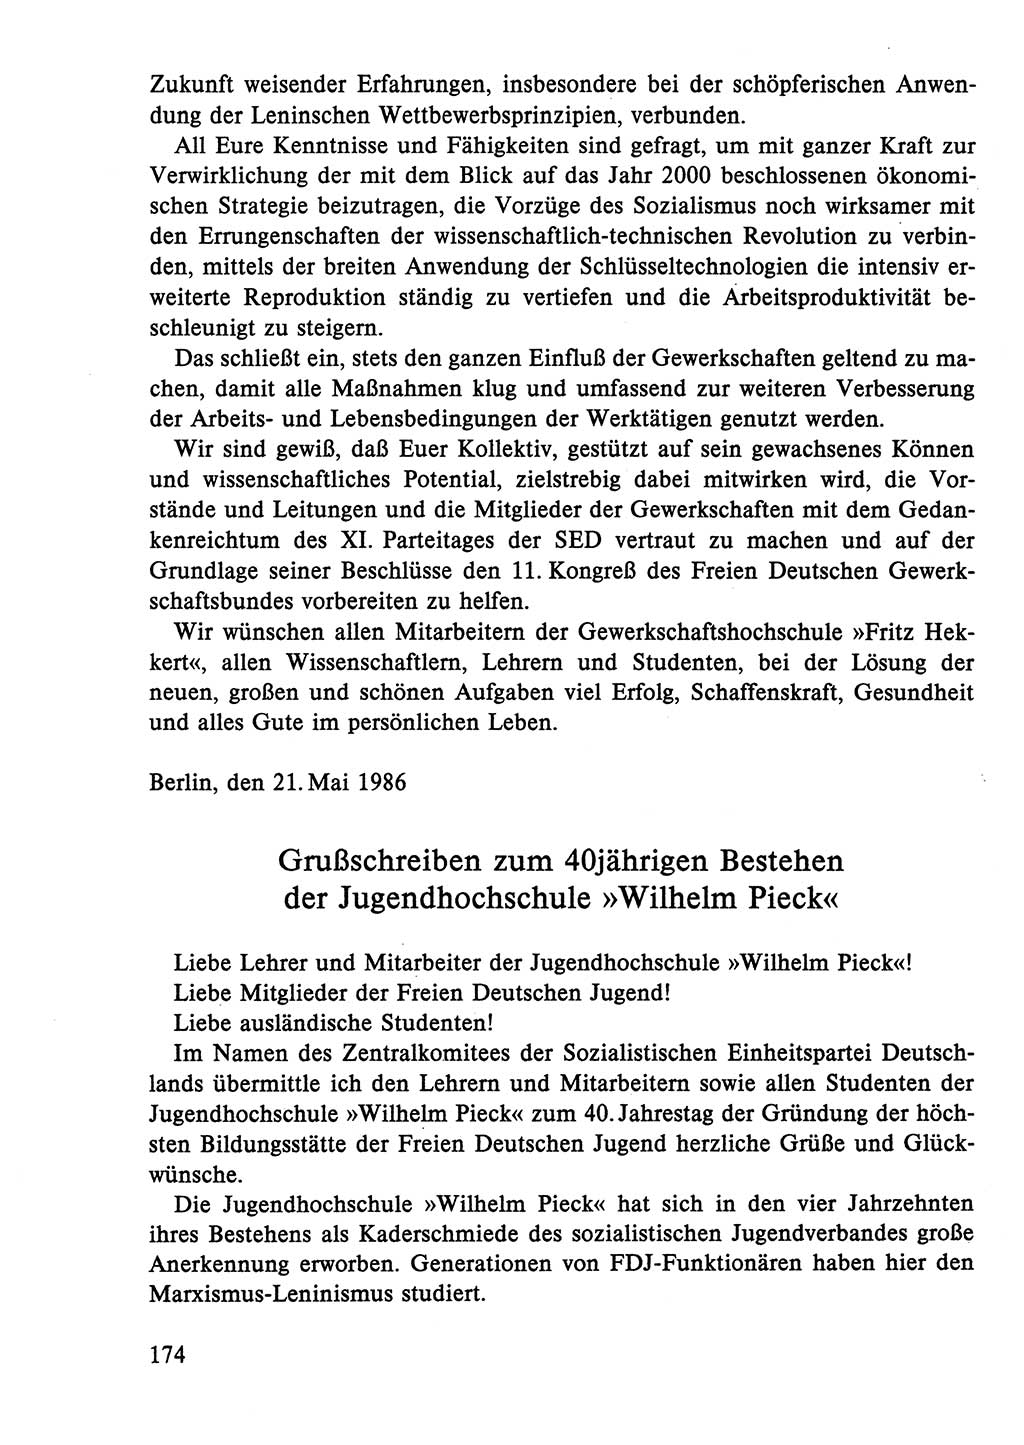 Dokumente der Sozialistischen Einheitspartei Deutschlands (SED) [Deutsche Demokratische Republik (DDR)] 1986-1987, Seite 174 (Dok. SED DDR 1986-1987, S. 174)